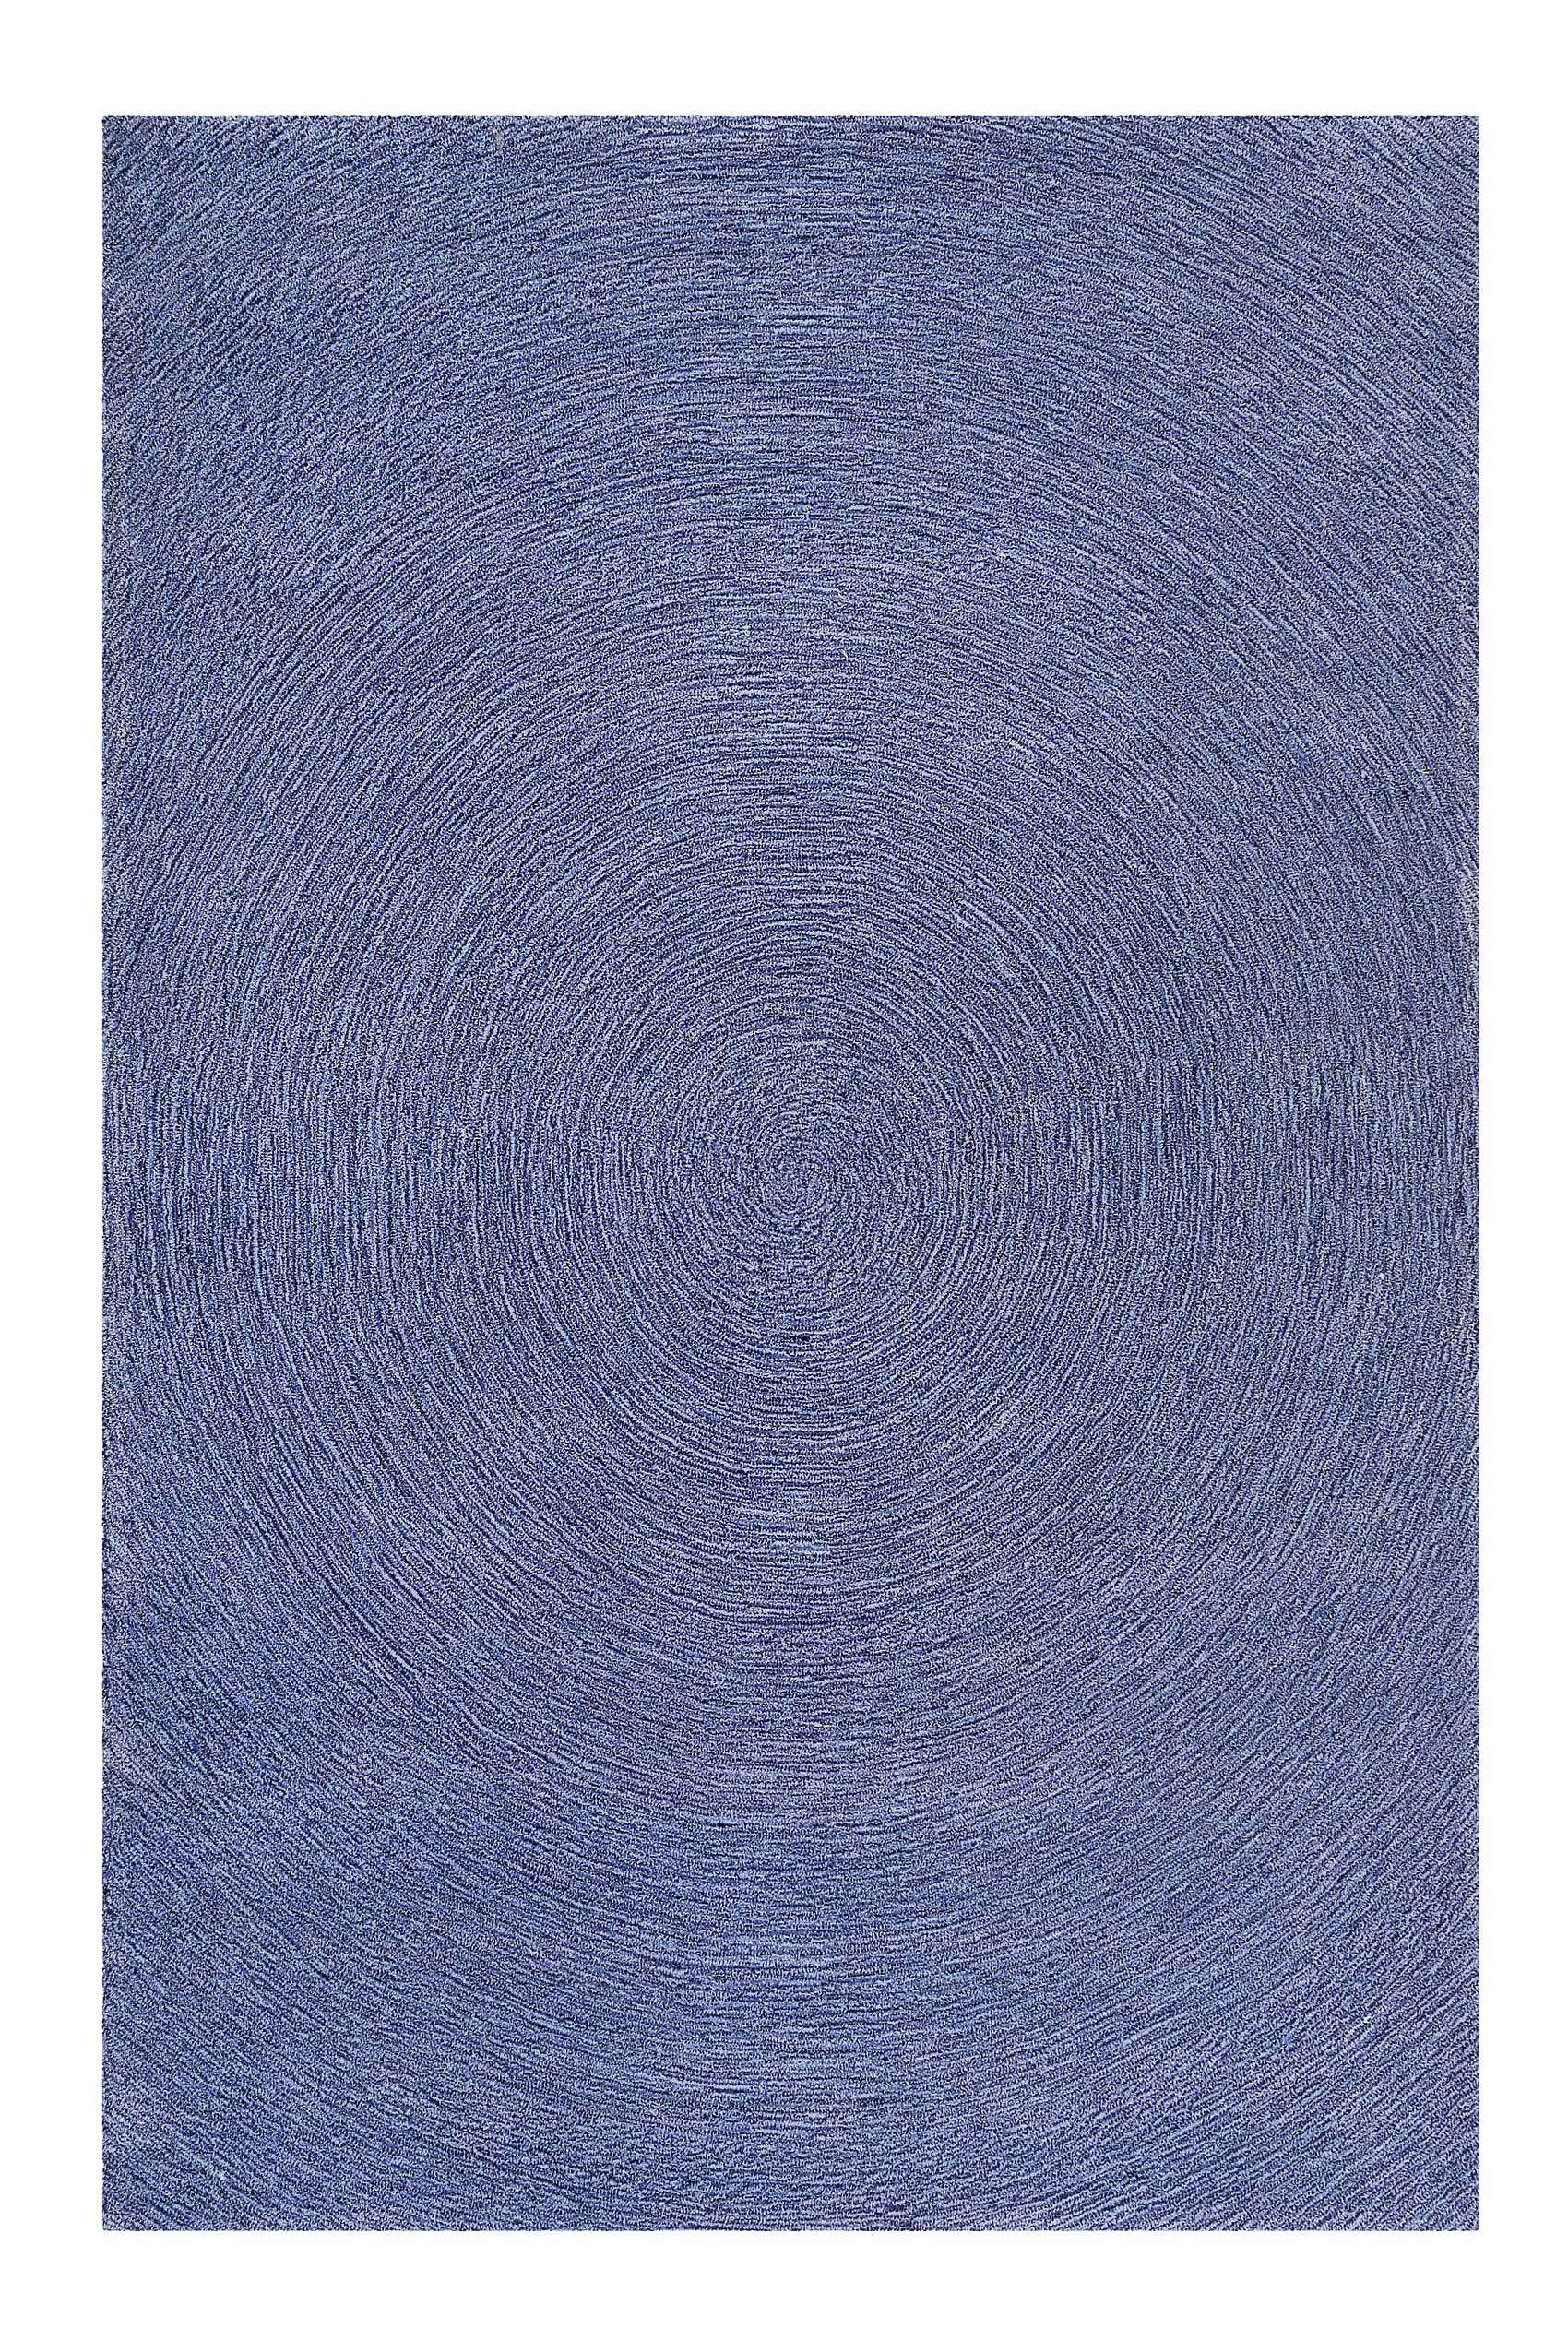 Esprit Teppich Blau meliert aus Wolle » Colour In Motion « - Ansicht 1